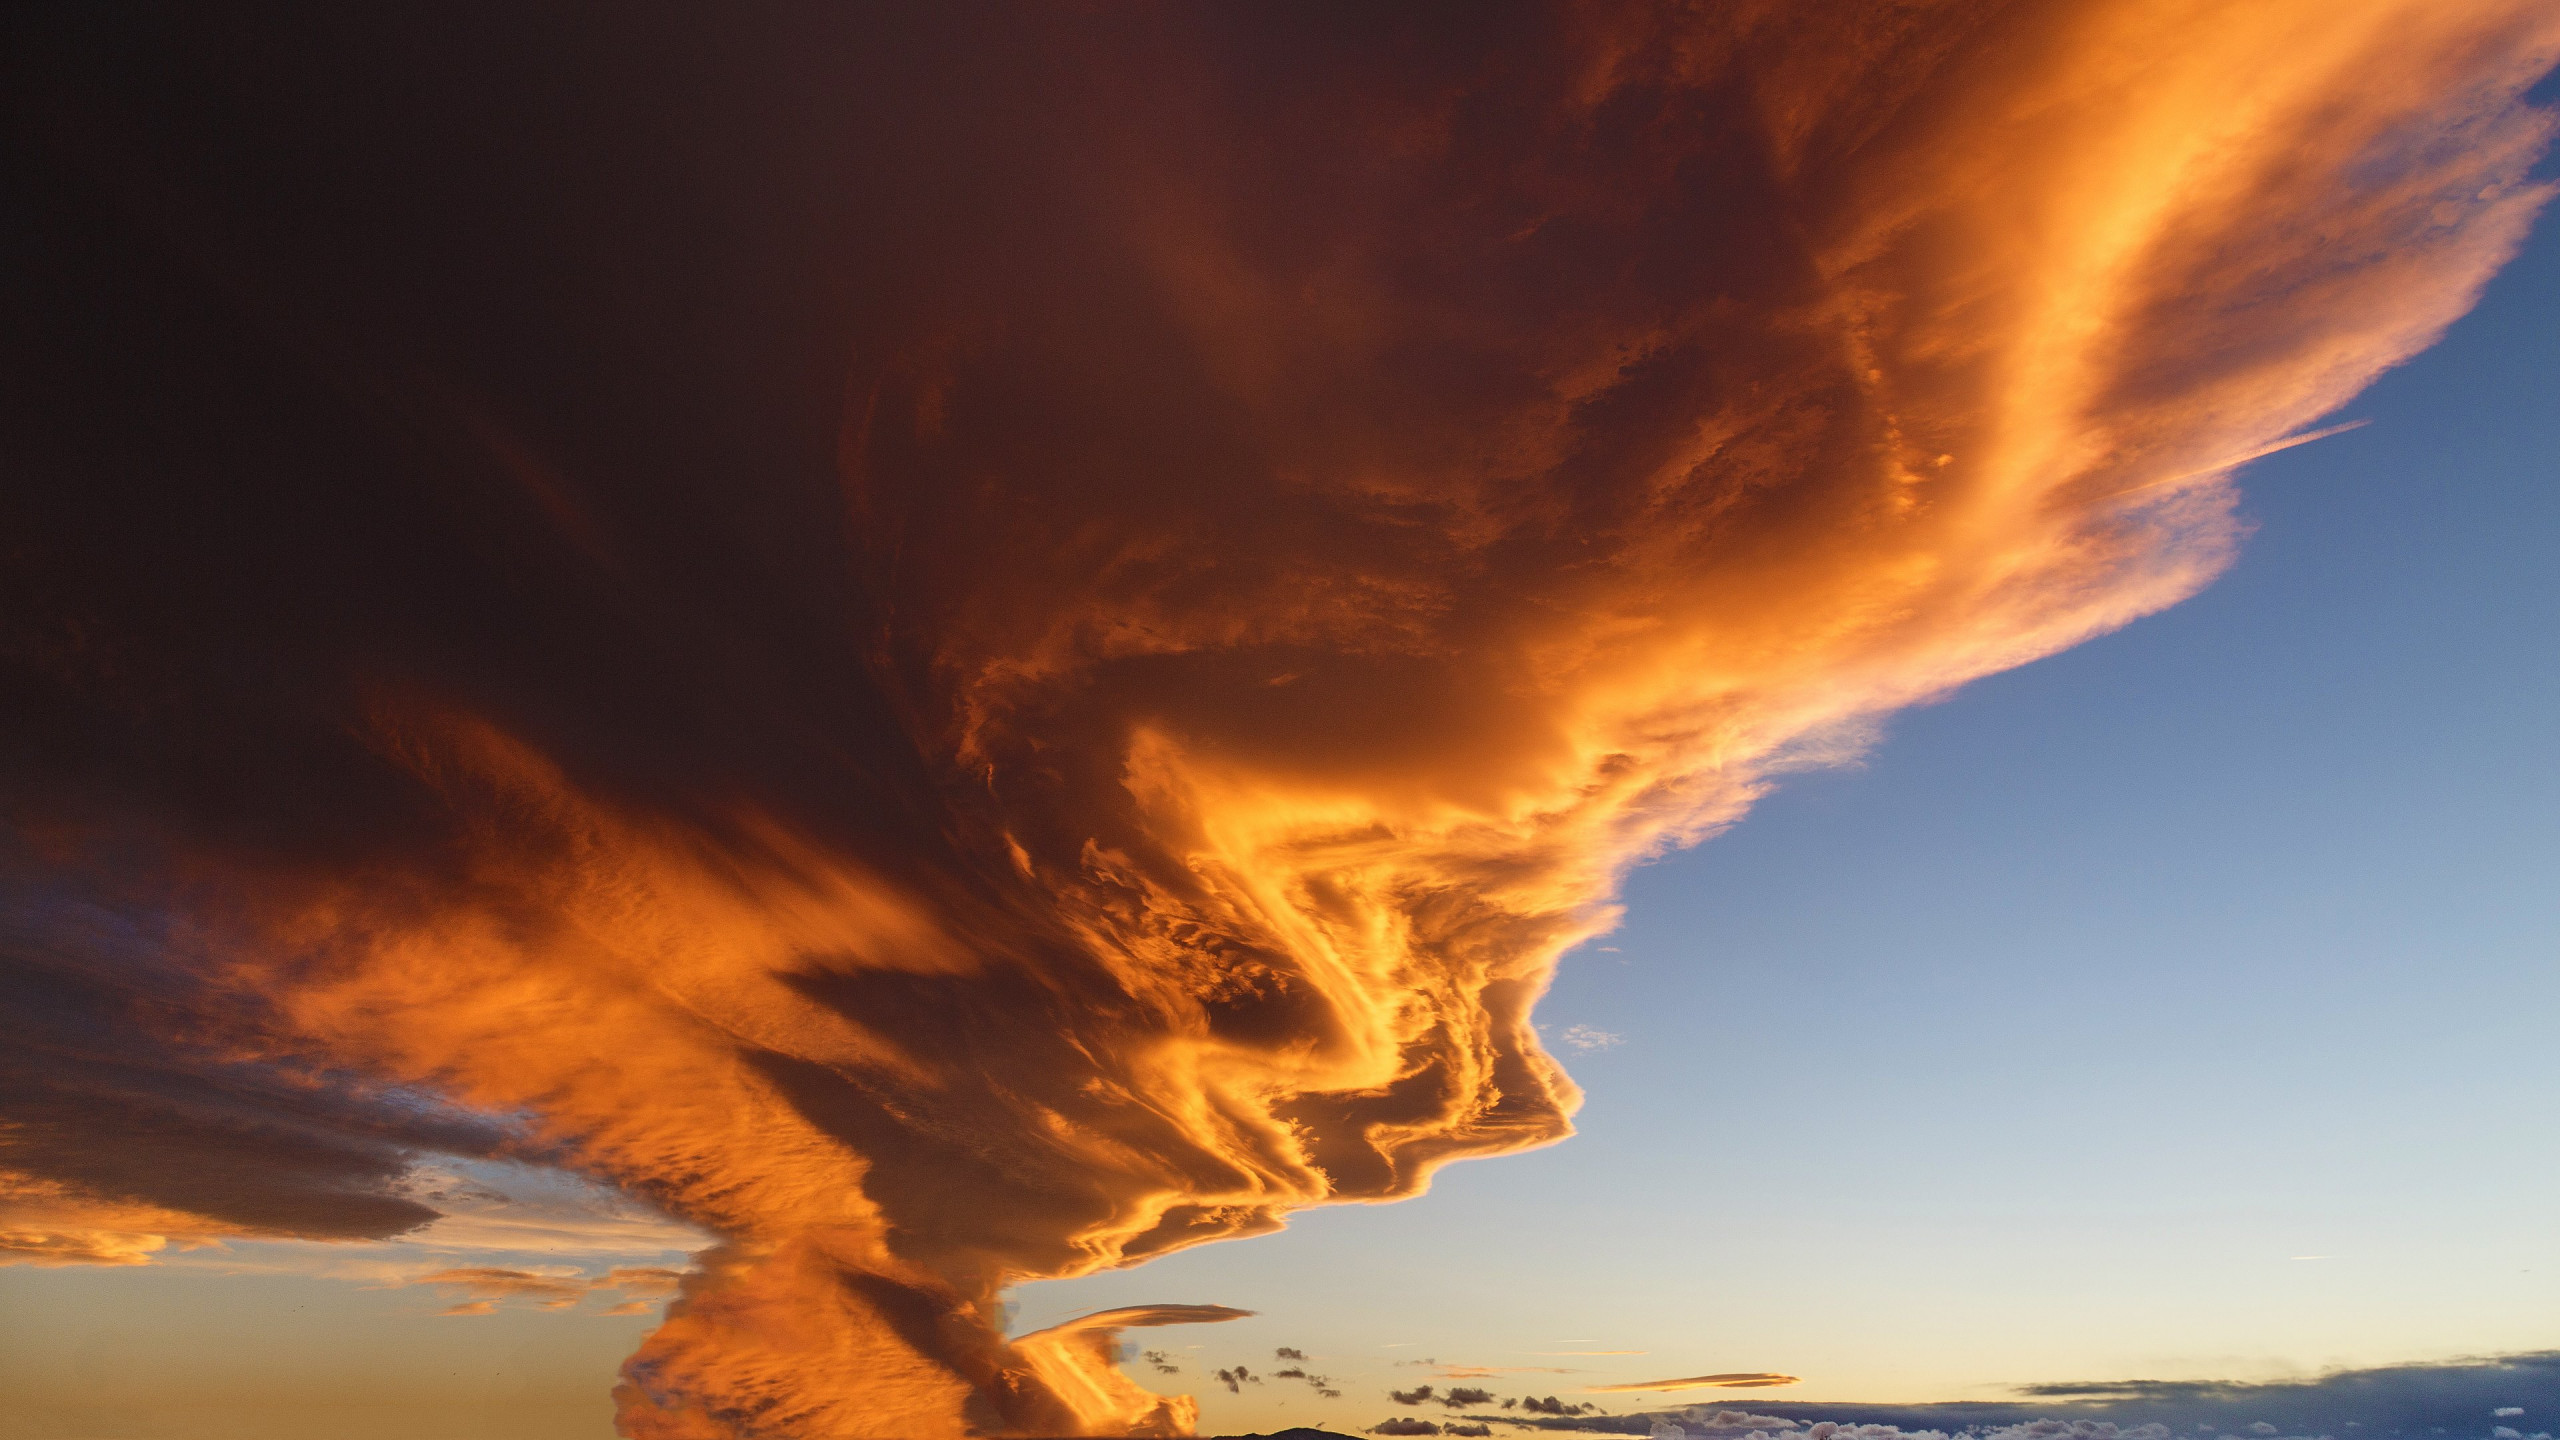 cloud 2560x1440 4k hd wallpaper sky sunset 10148